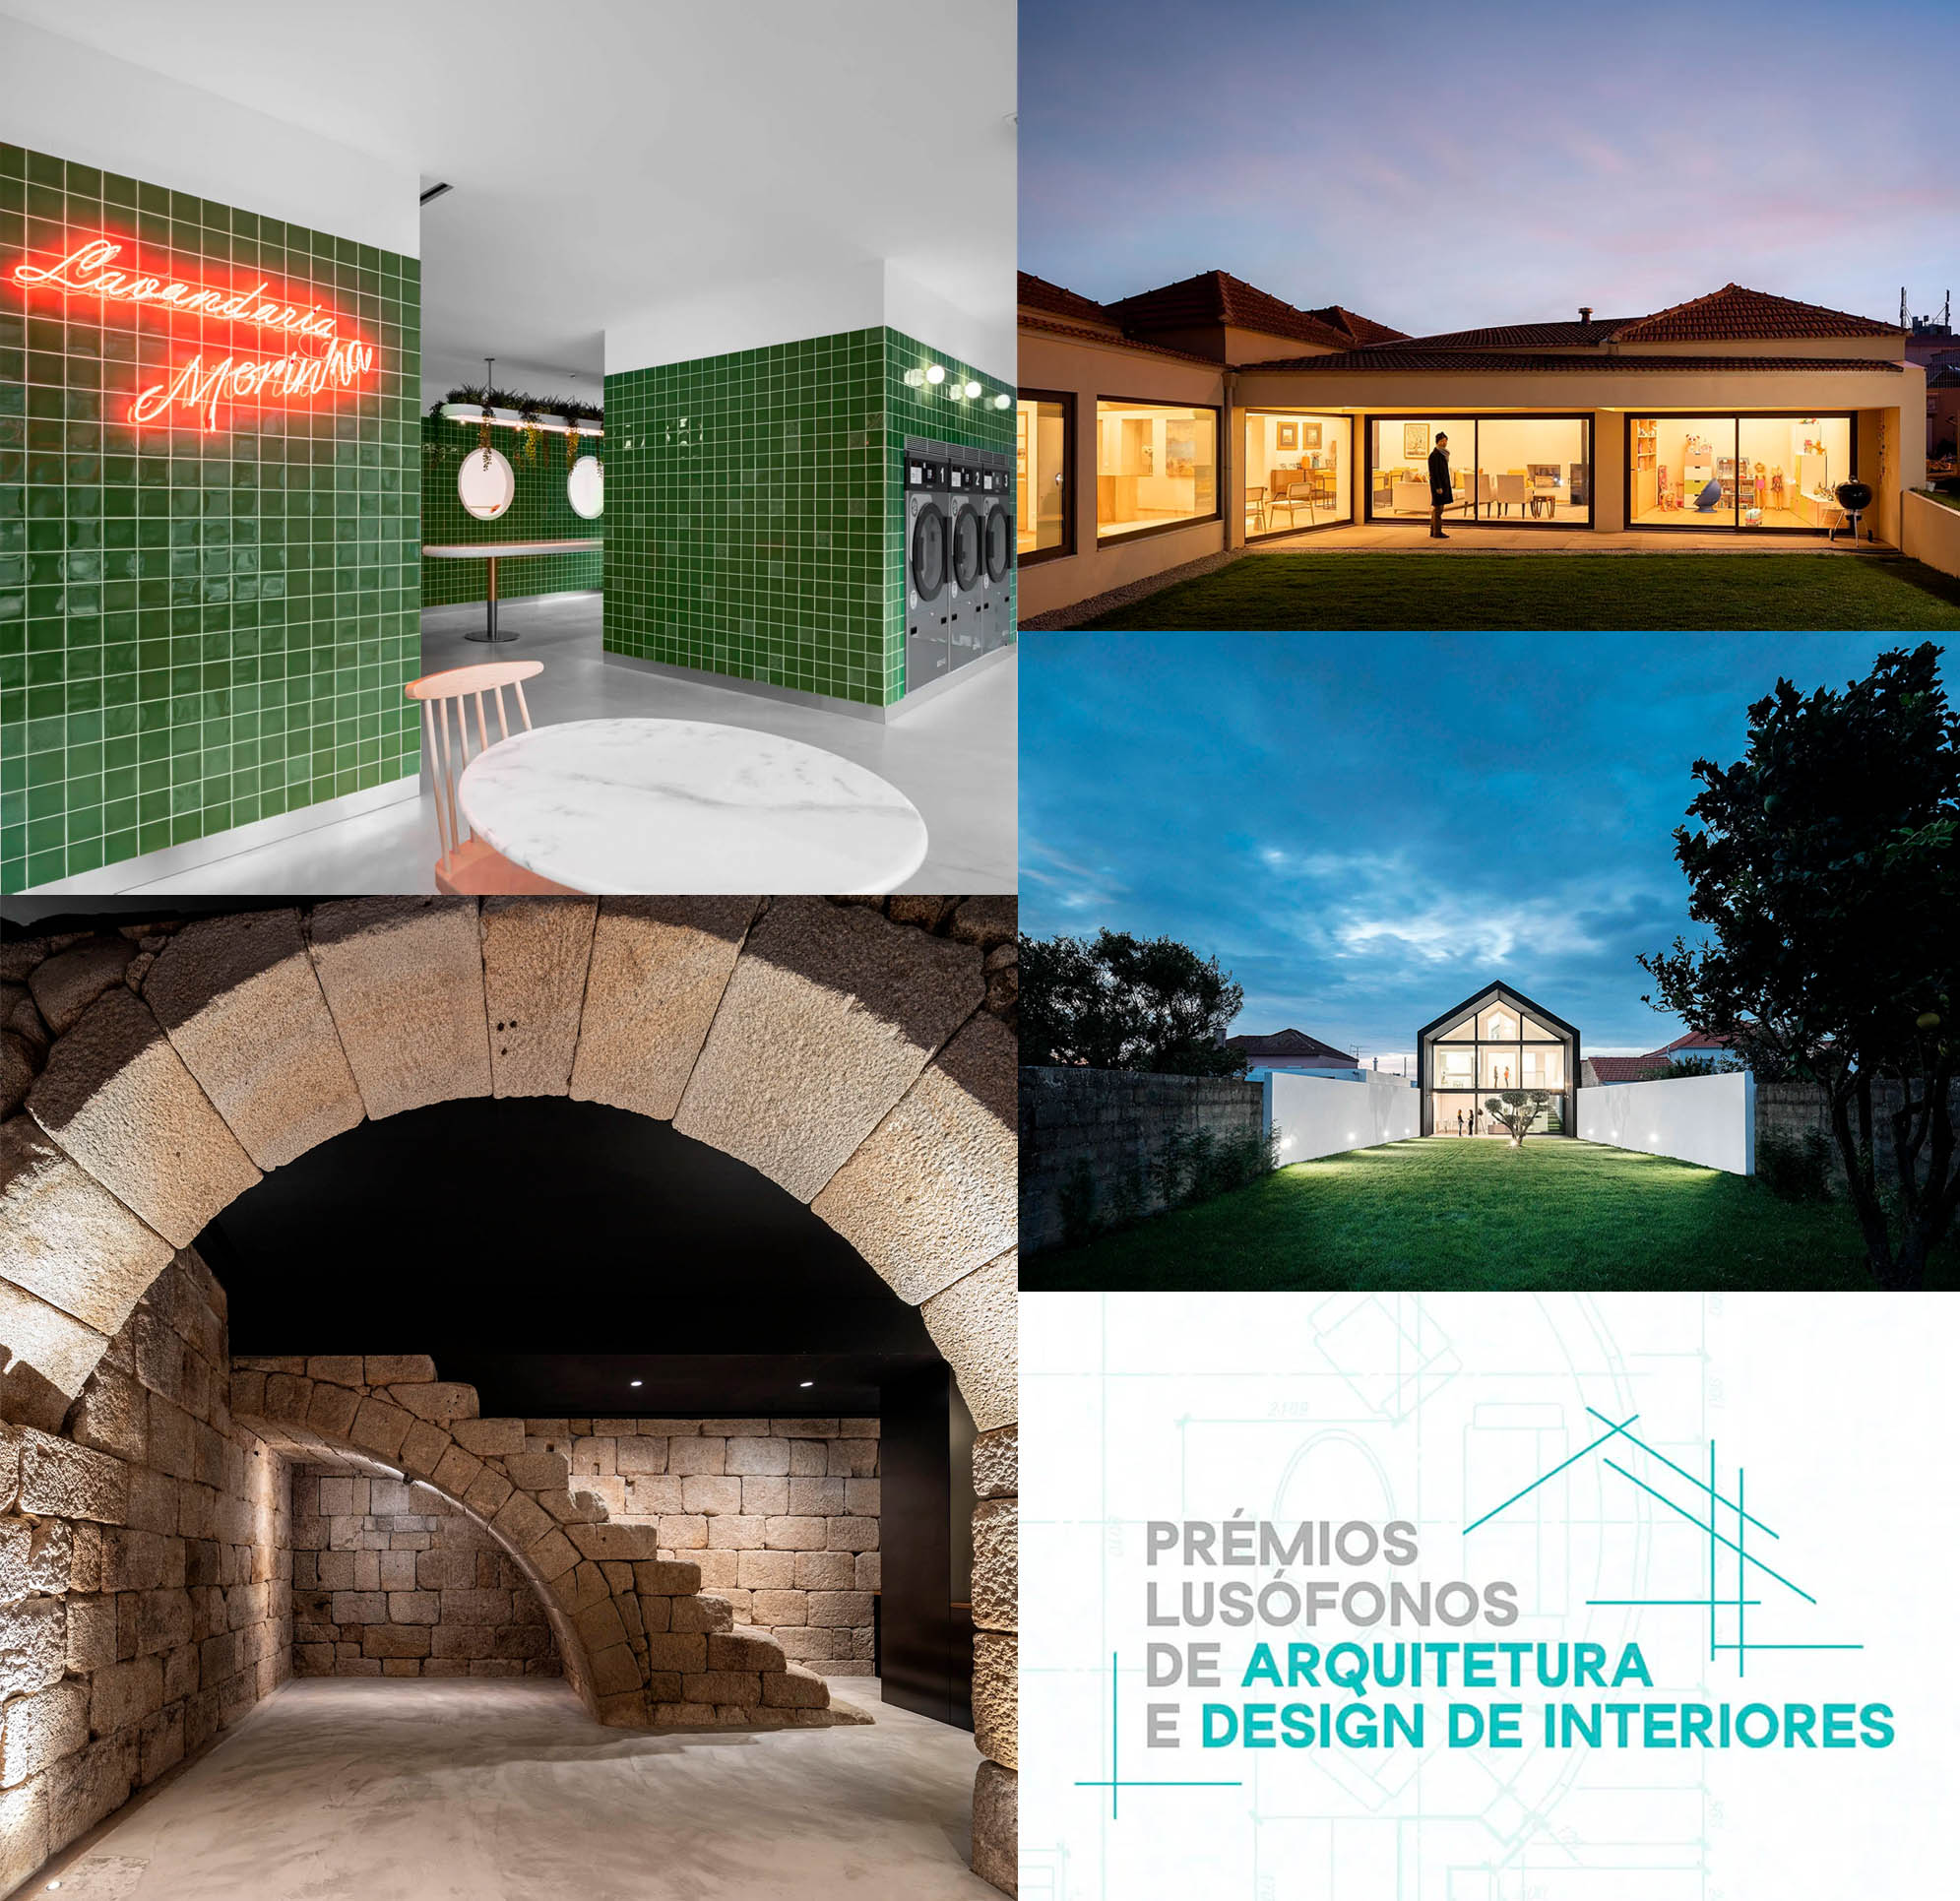 premios lusofonos de arquitetura e design de interiores